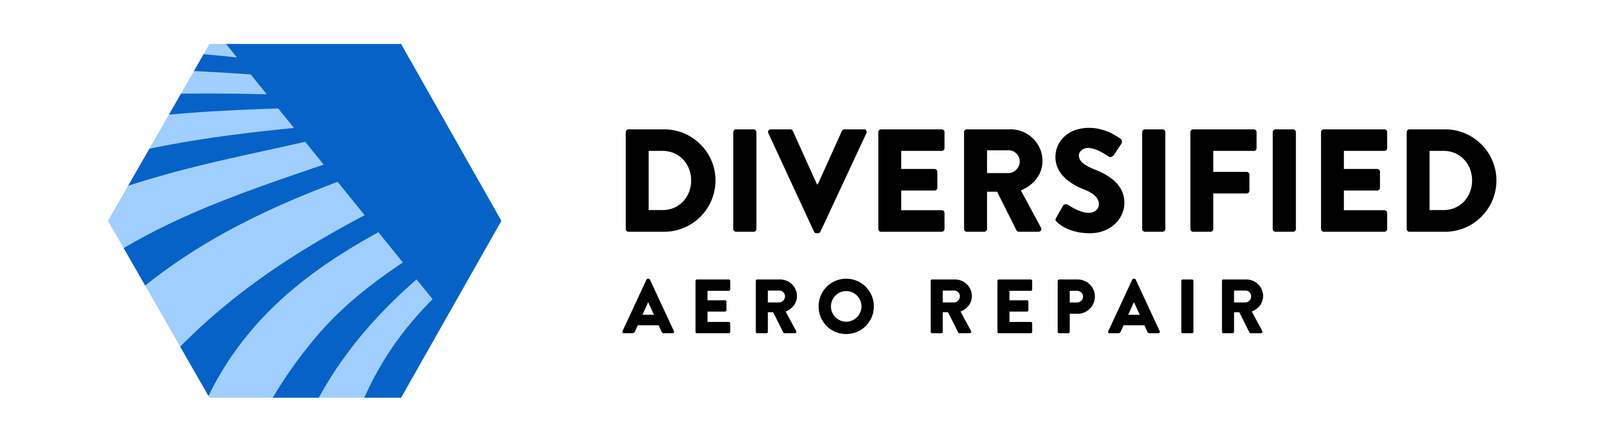 Diversified Aero Repair